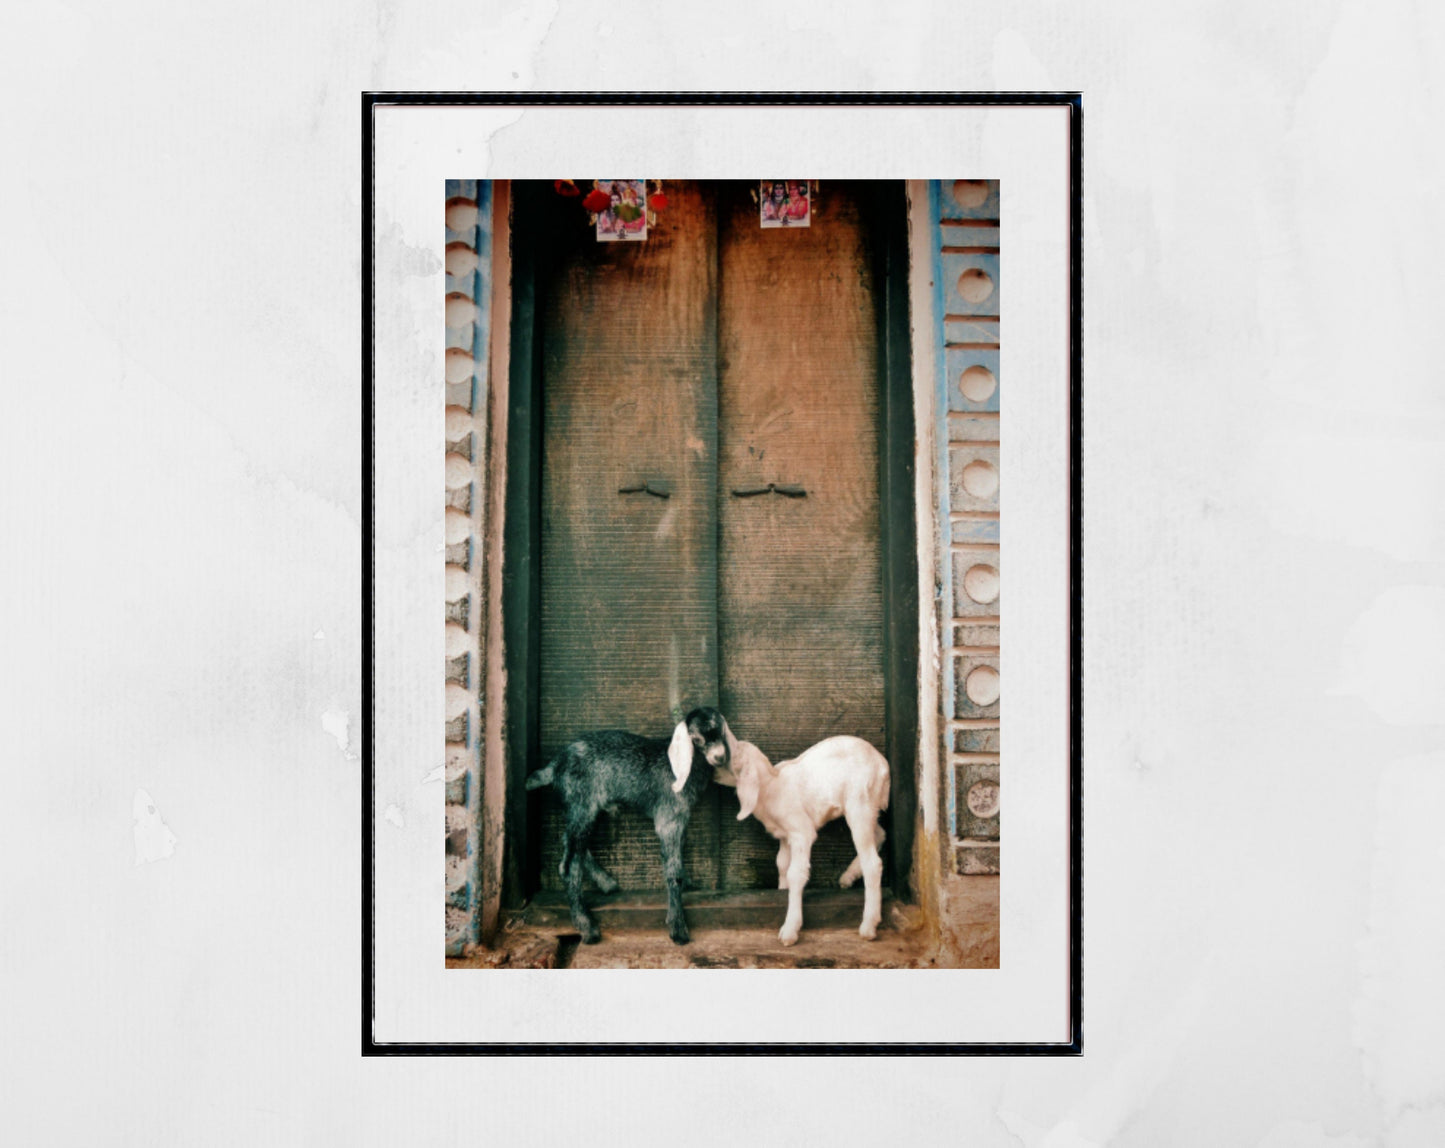 Goat Photography Varanasi India Wall Art